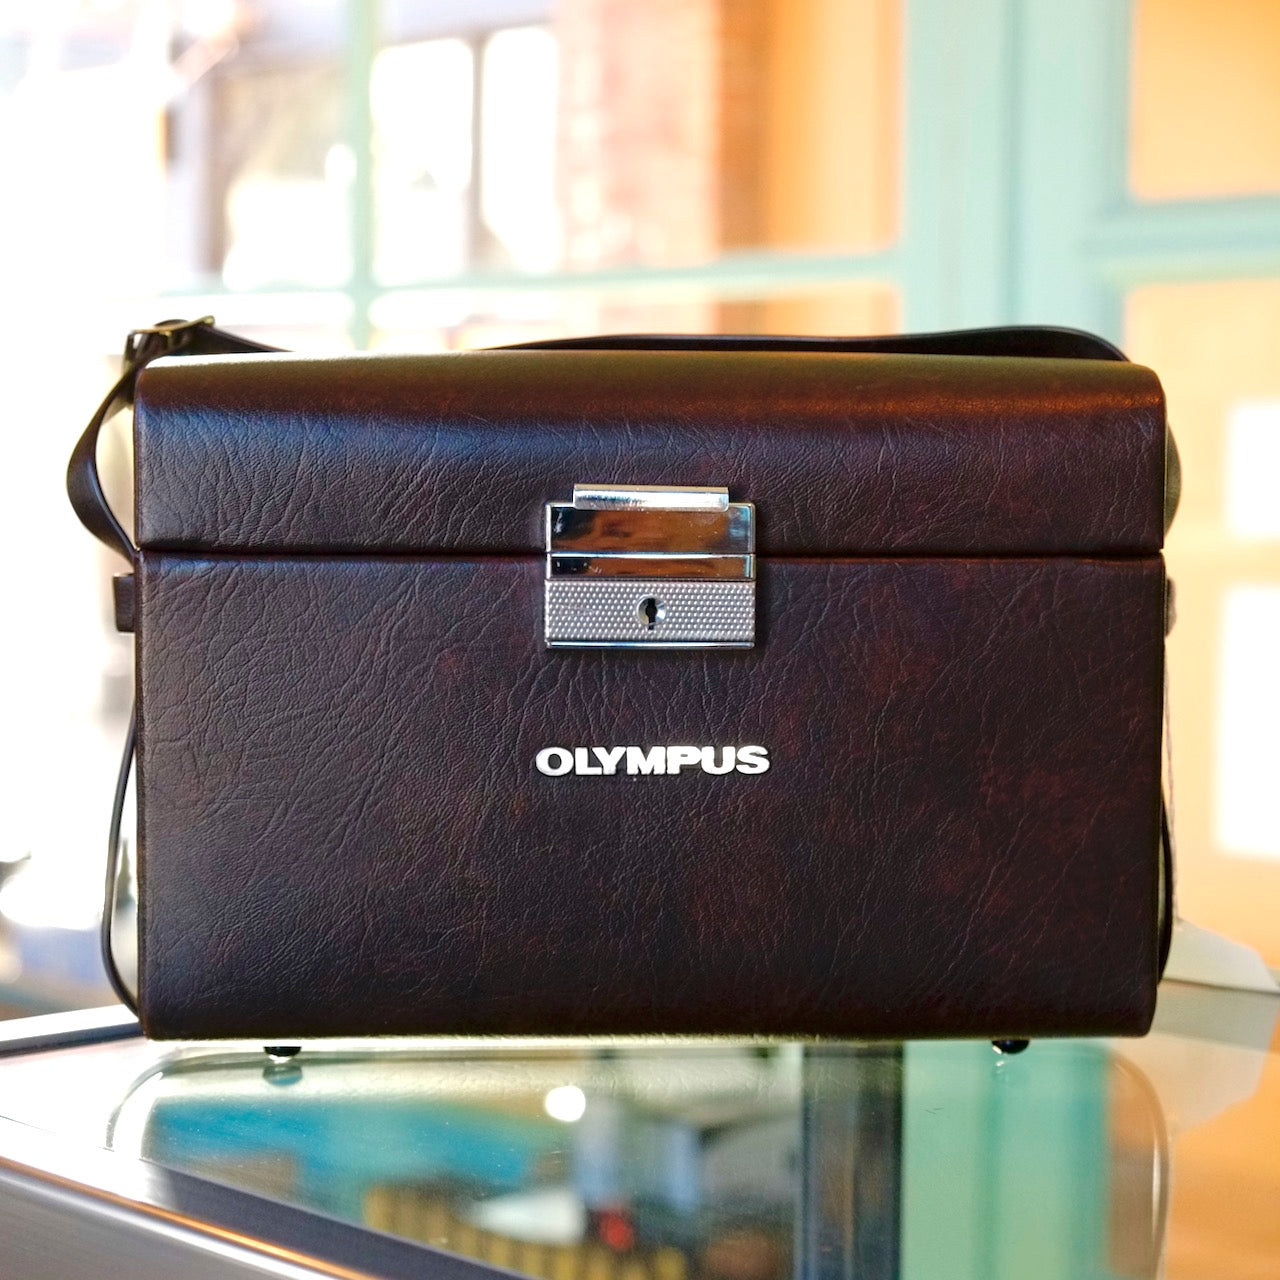 Olympus camera case